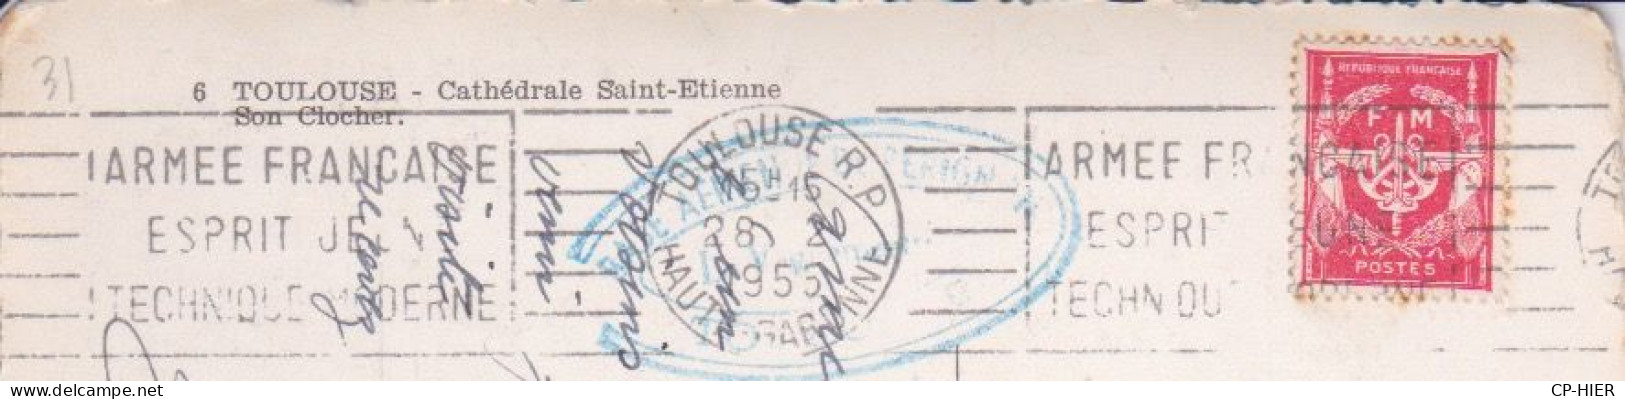 FRANCHISE MILITAIRE  FM + FLAMME ARMEE FRANÇAISE ESPRIT JEUNE TECHNIQUE MOSDERNE + CACHET BLEU - Military Postage Stamps